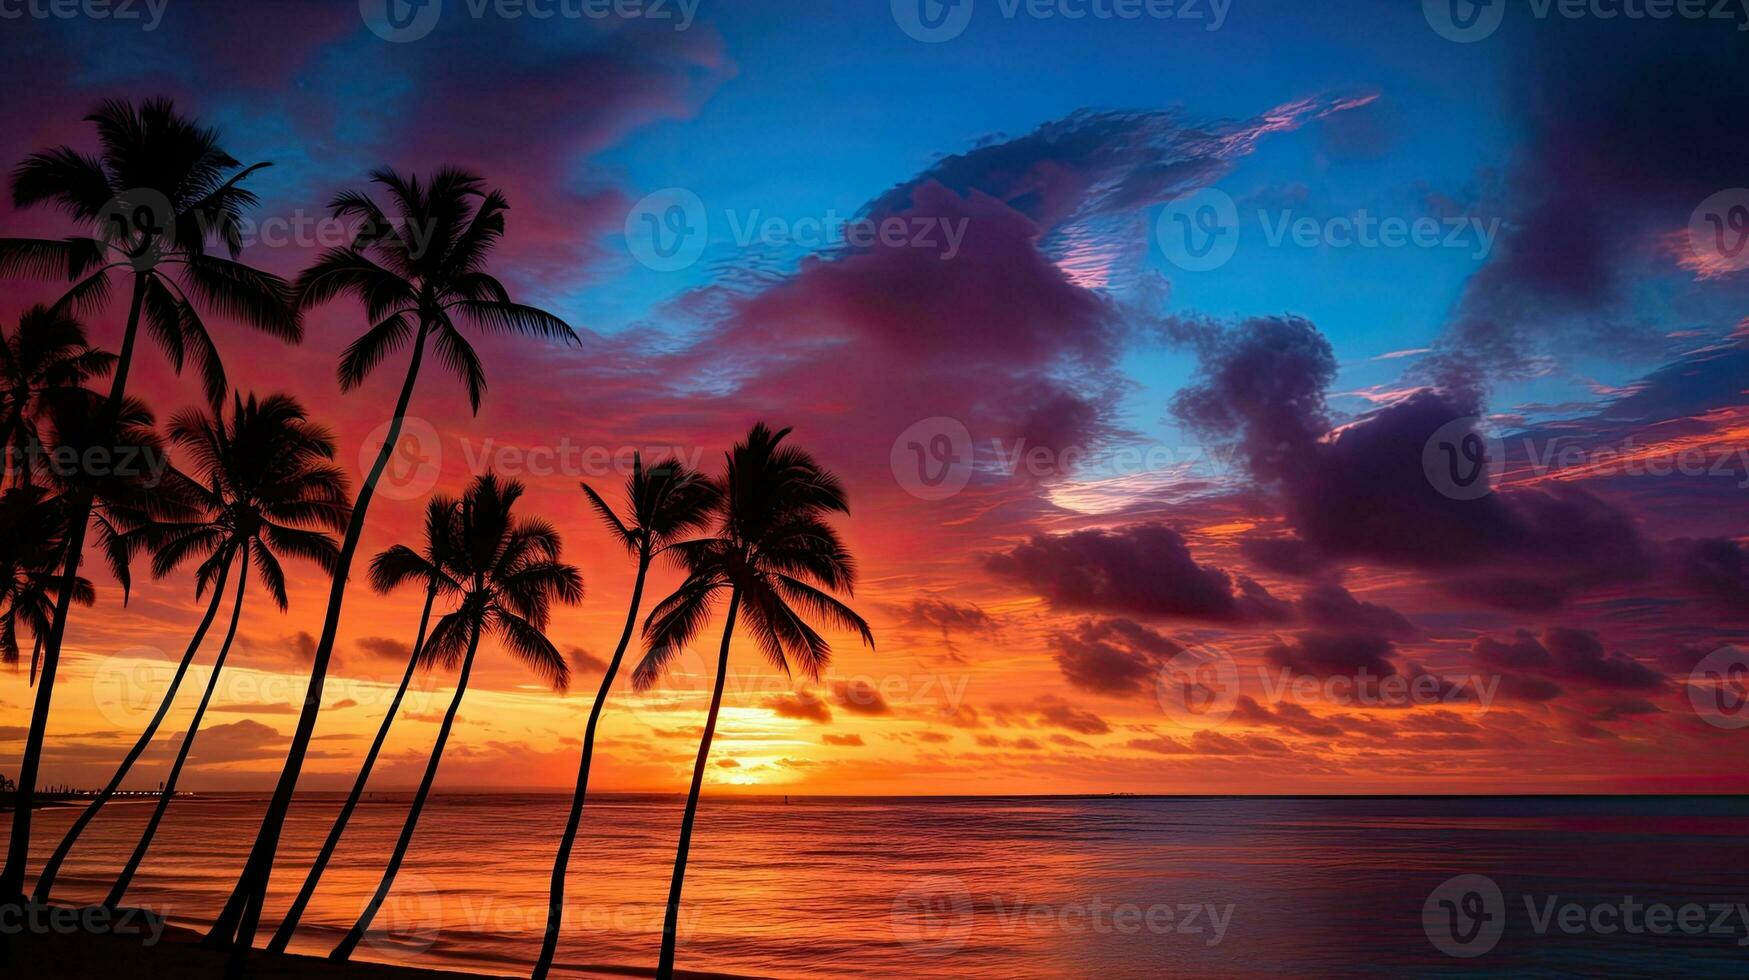 kleurrijk dramatisch zonsondergang lucht over- waikiki met palm boom silhouetten oceaan voorgrond foto